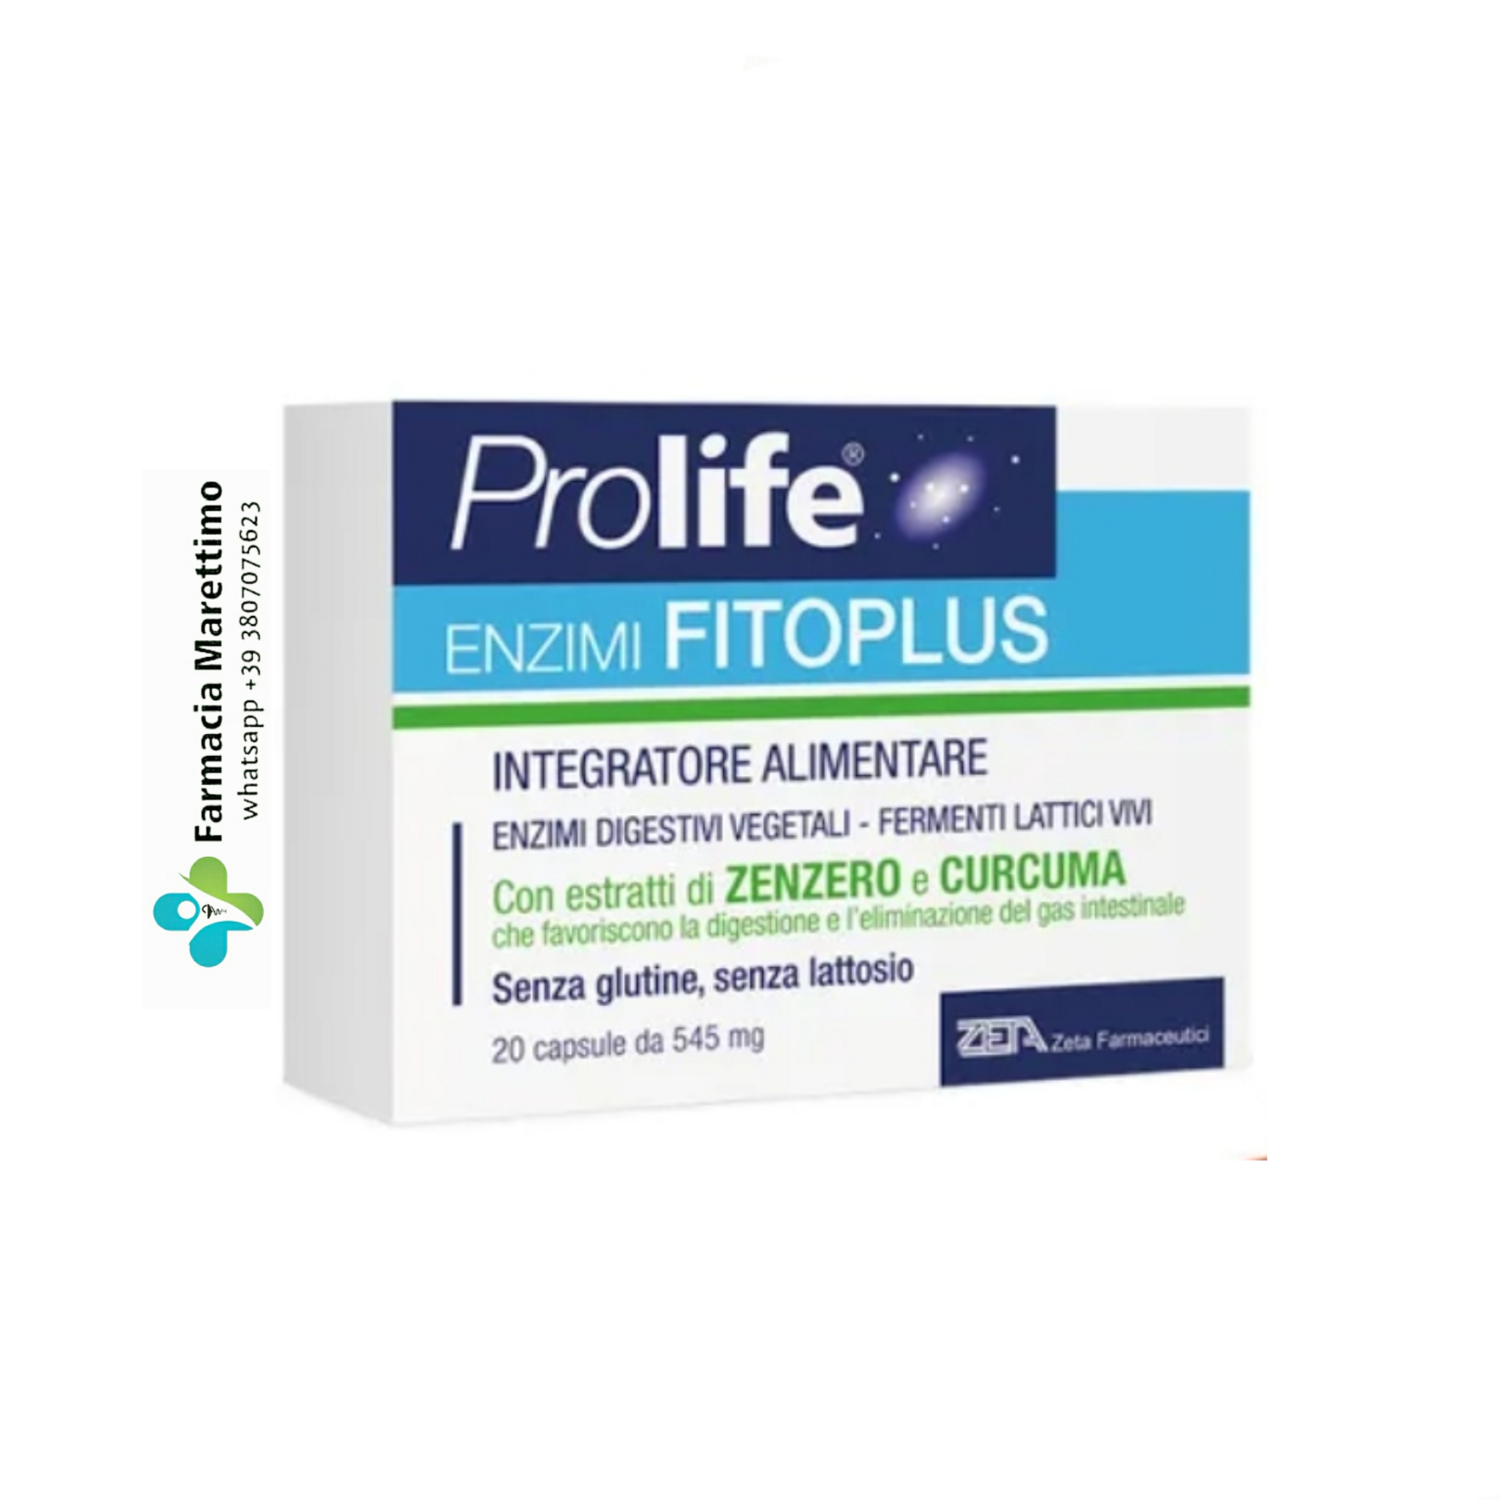 Prolife Enzimi Fitoplus 20 Cps - Integratore alimentare con 16 tipi di enzimi digestivi vegetali, fermenti lattici ed estratti vegetali